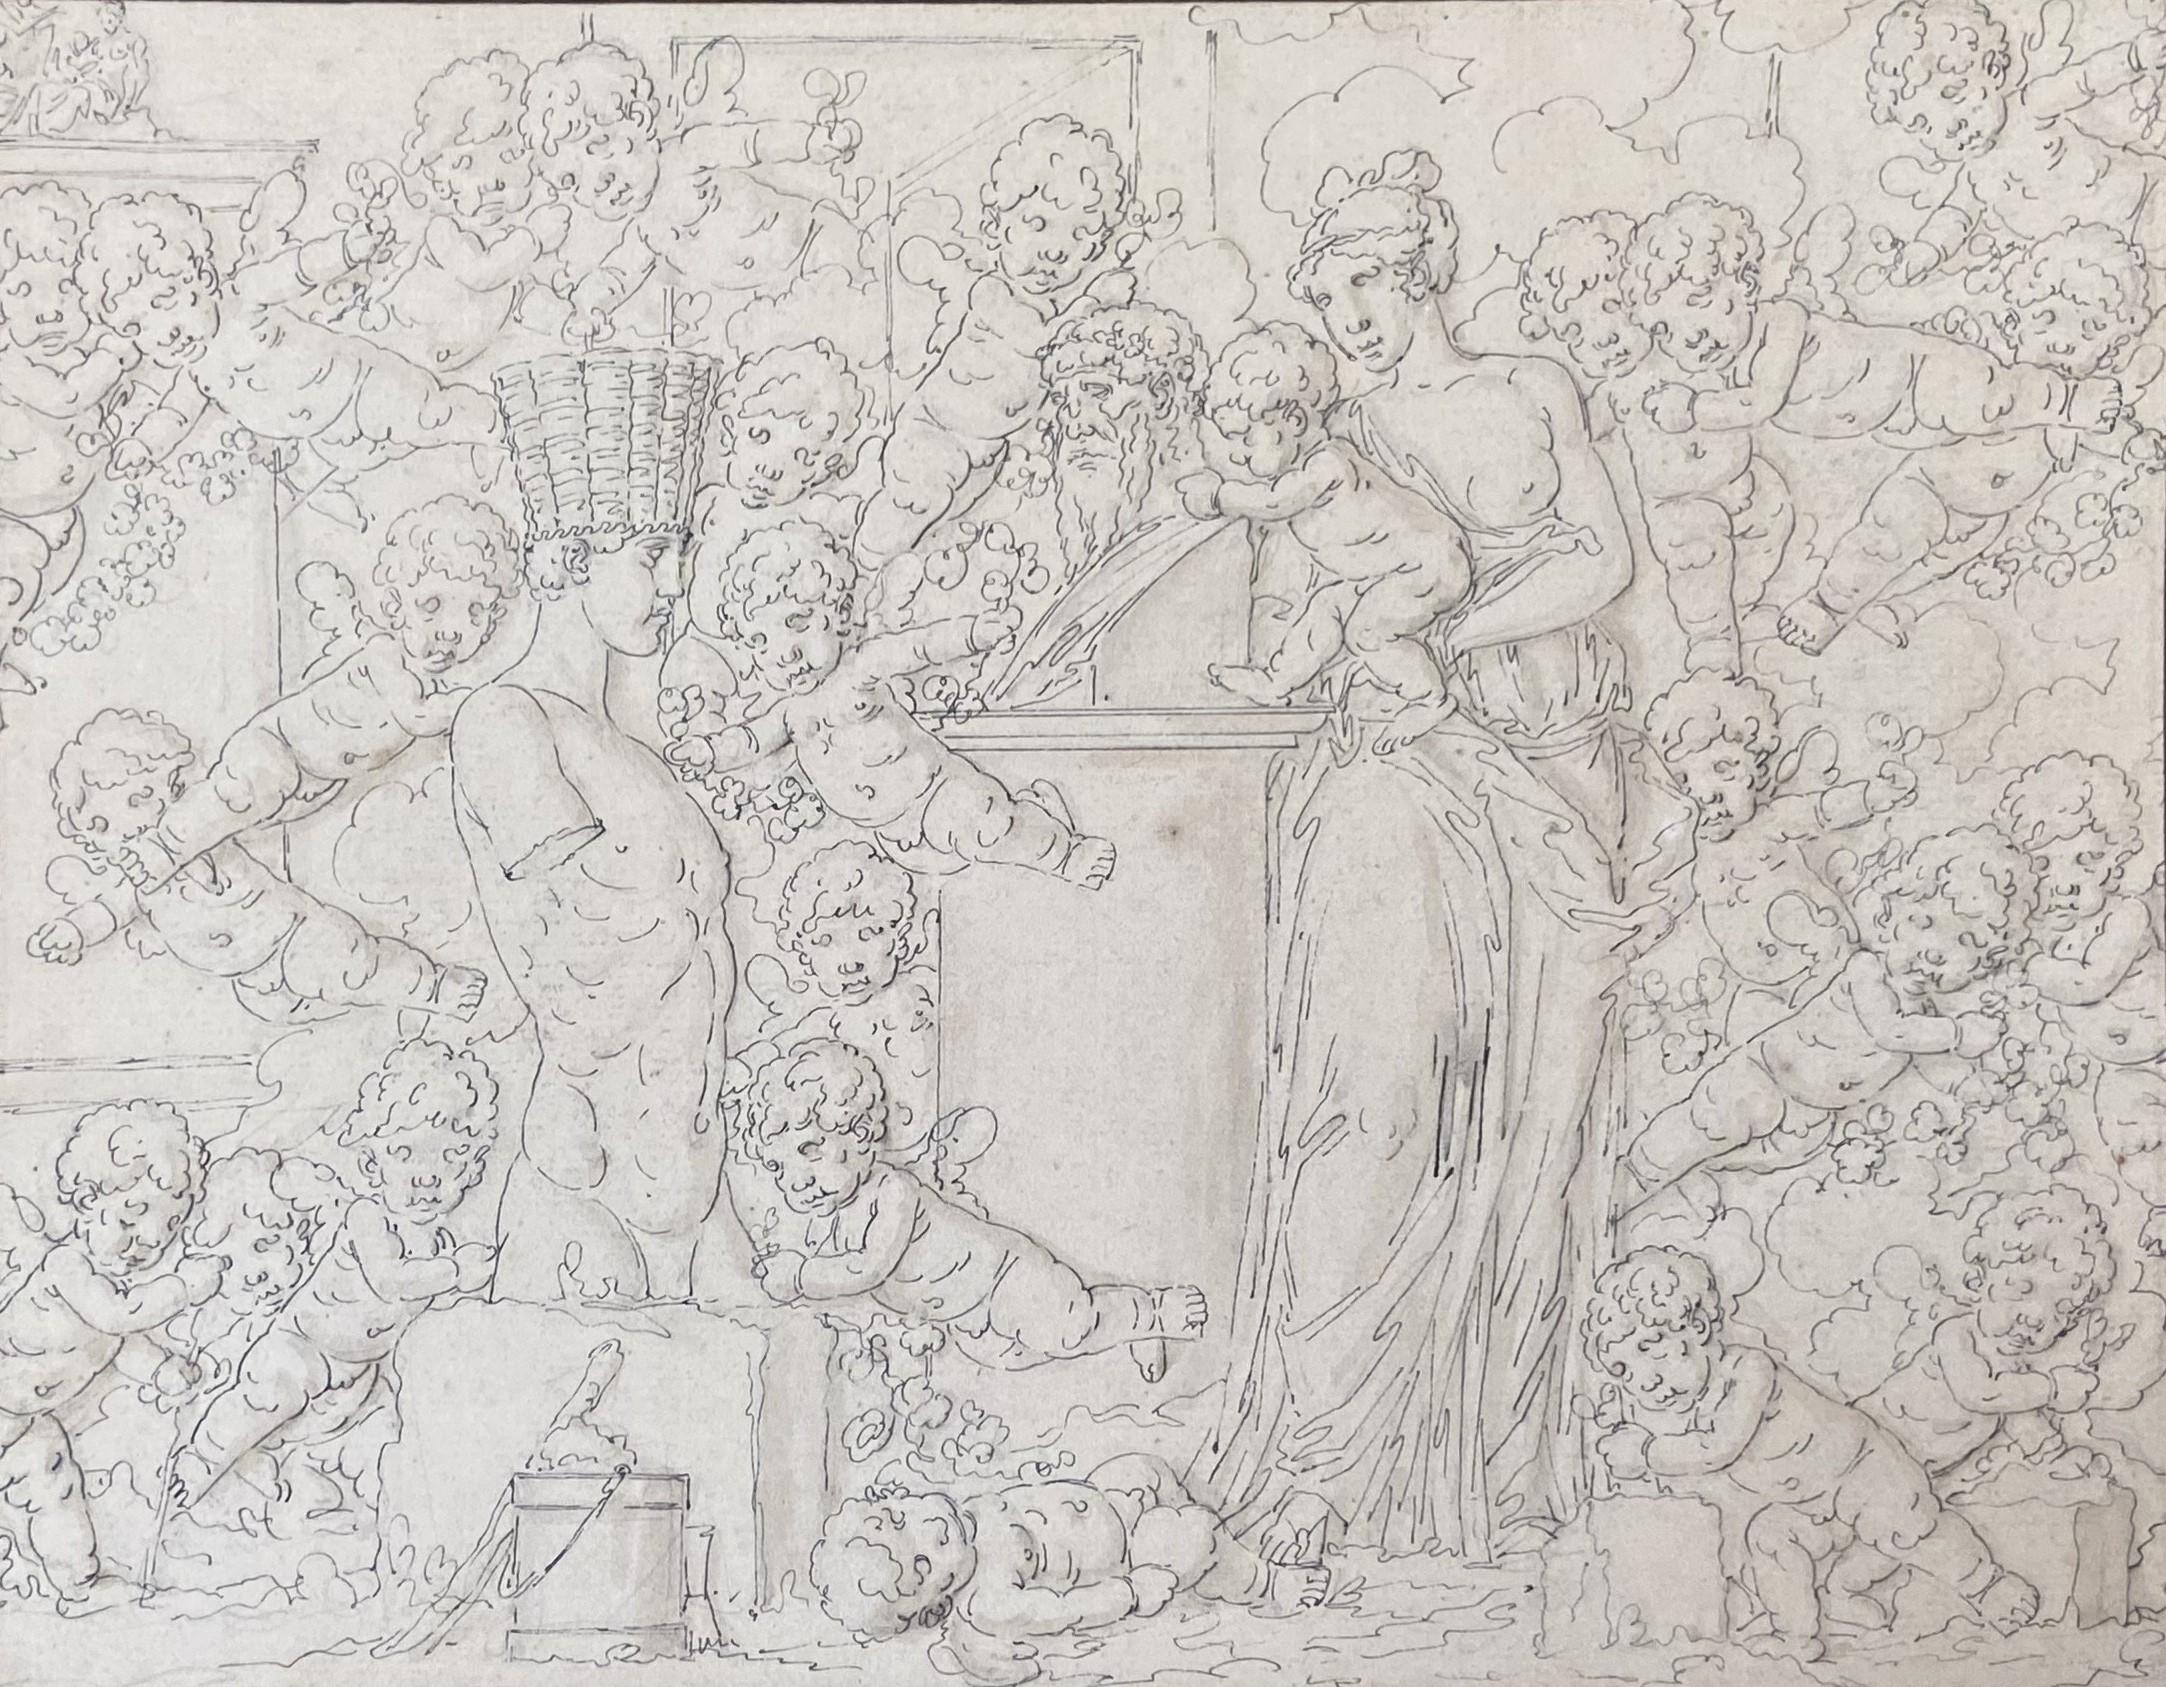 Louis-Félix de La Rue (1730-1777) 
Eine mythologische Szene
Feder und schwarze Tinte auf Papier 
Trägt eine alte Inschrift mit dem Namen des Künstlers am unteren linken Rand des Passepartouts
20,7 x 26,3 cm
In gut  Zustand, eine kleine